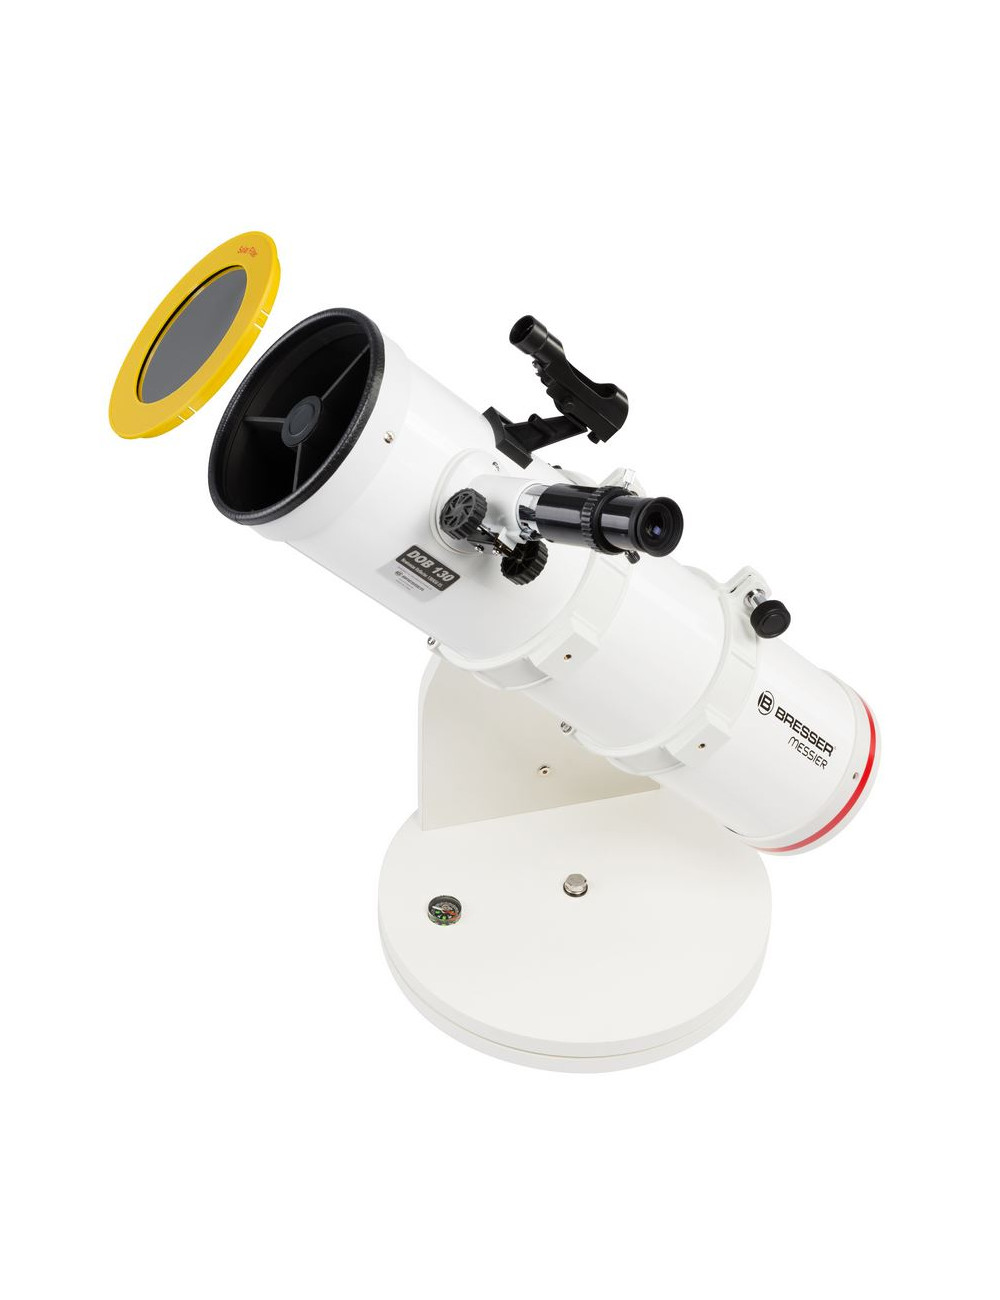 Choisir un premier télescope, Blogue